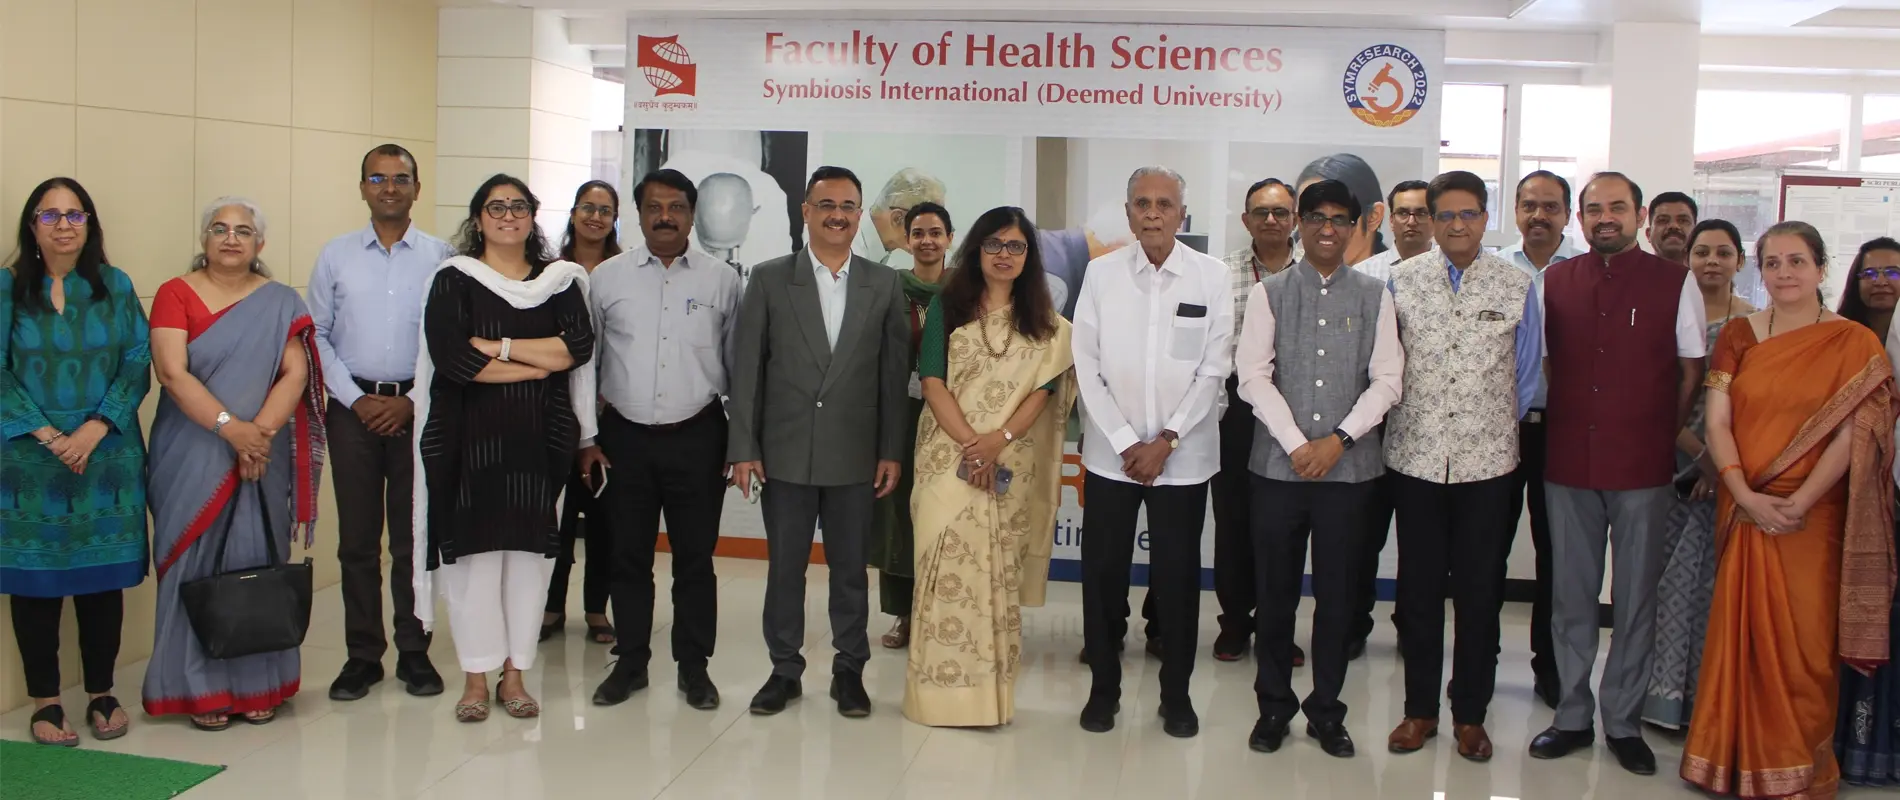 phd in biotechnology in mumbai